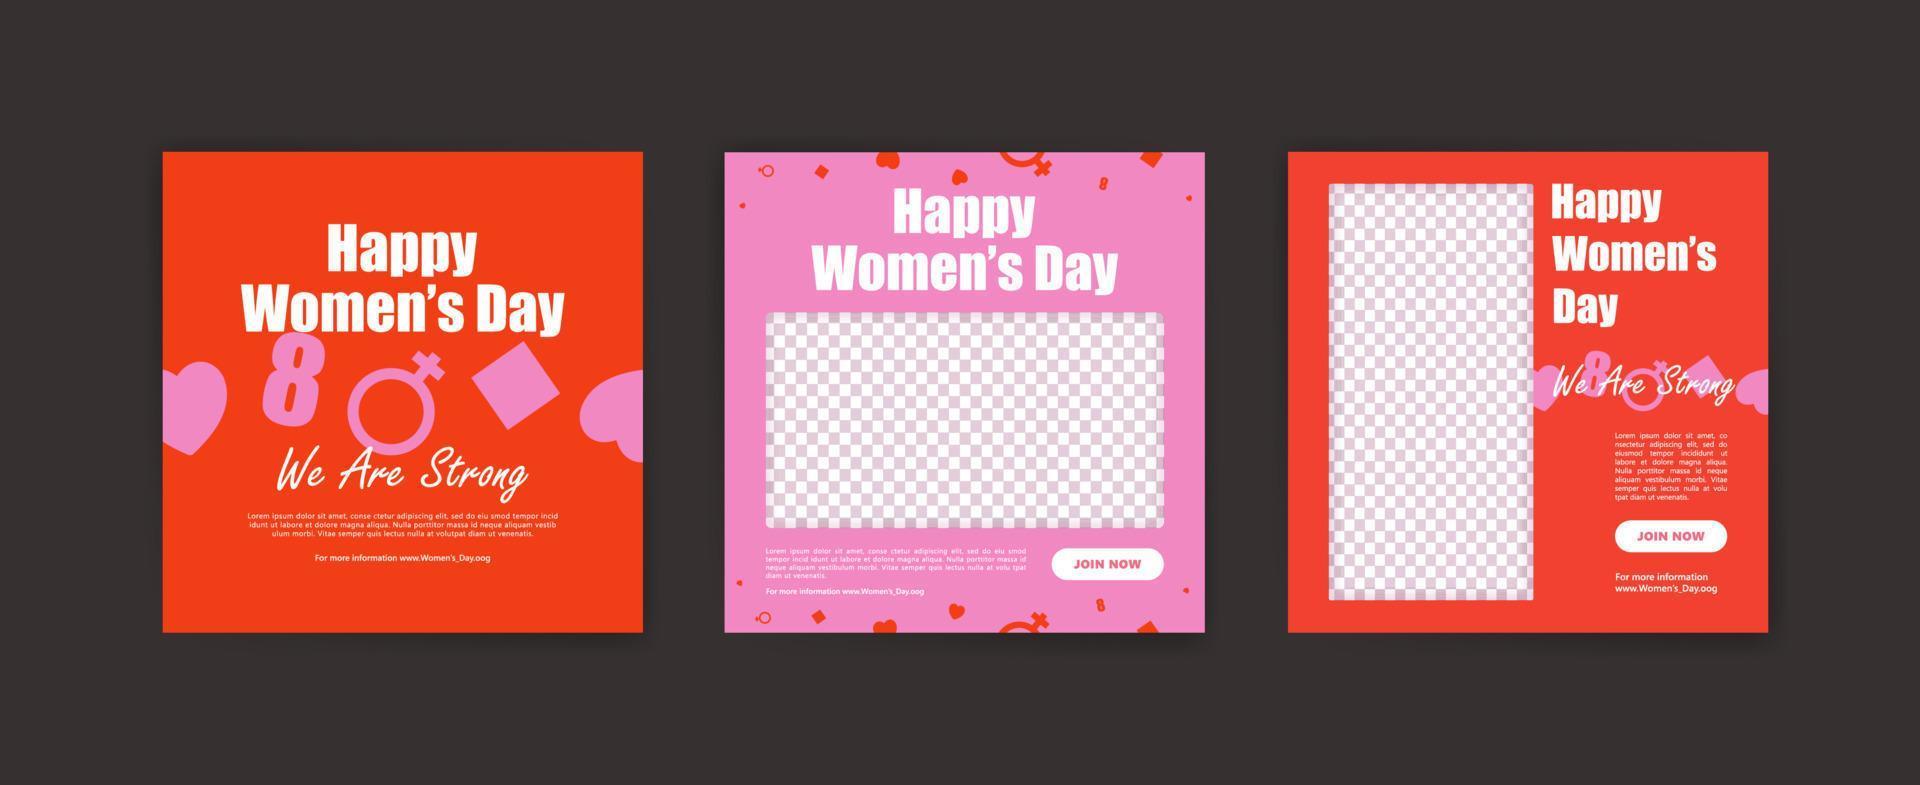 Happy Women's Day Banner. Social-Media-Beitragsvorlage zum Feiern des glücklichen Frauentages. vektor